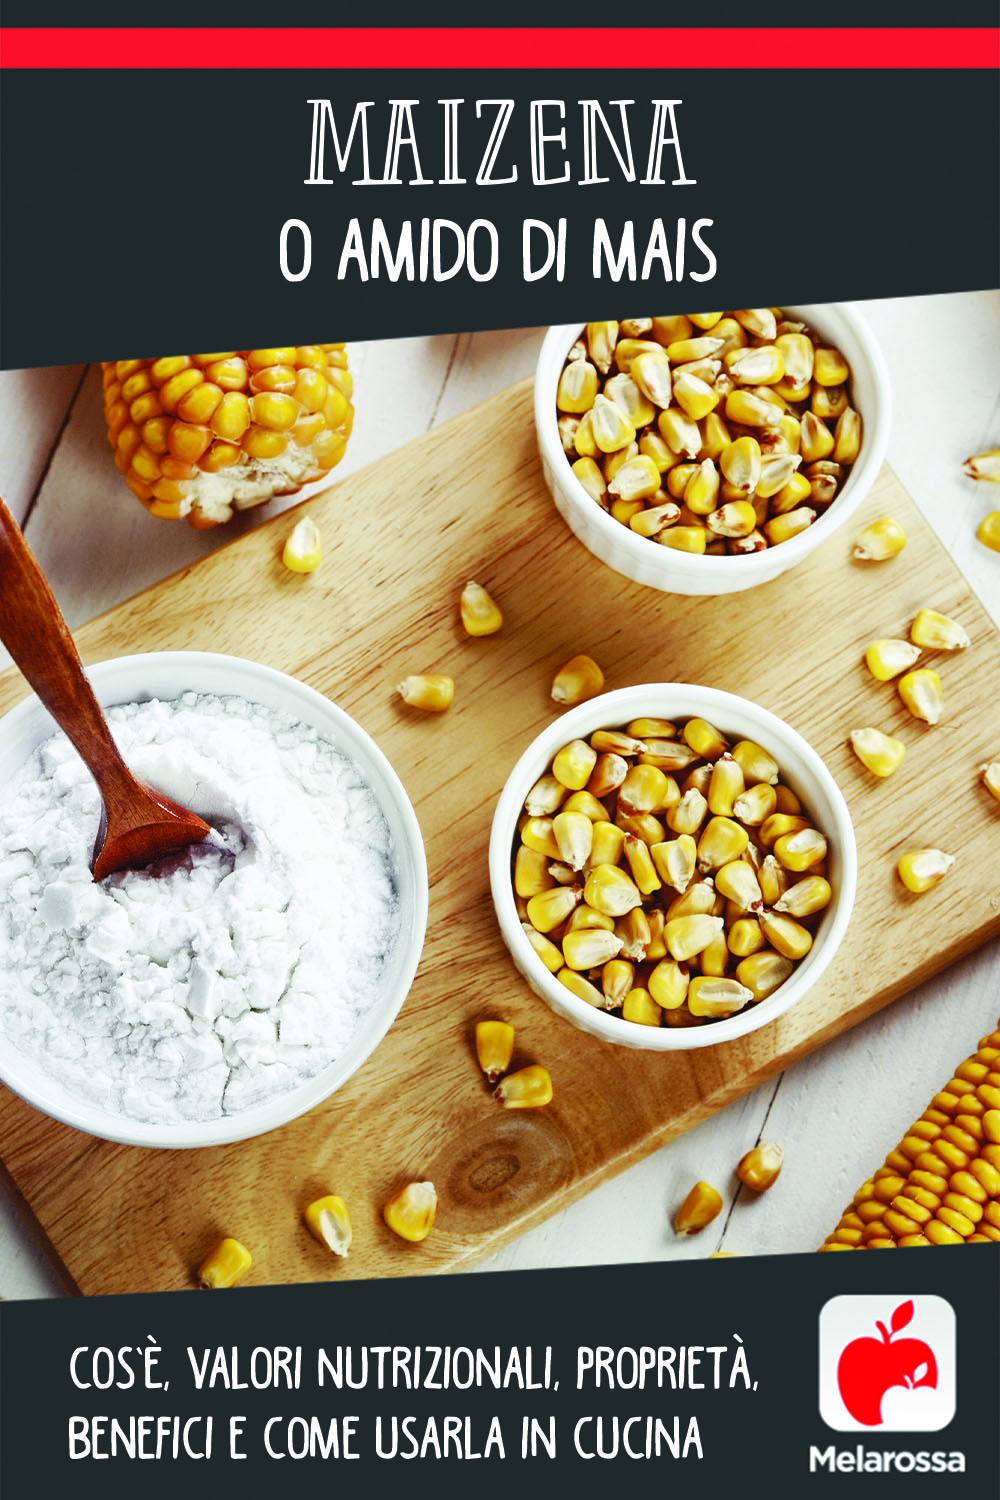 maizena o amido di mais: cos'è, valori nutrizionali, benefici e come usarla in cucina 